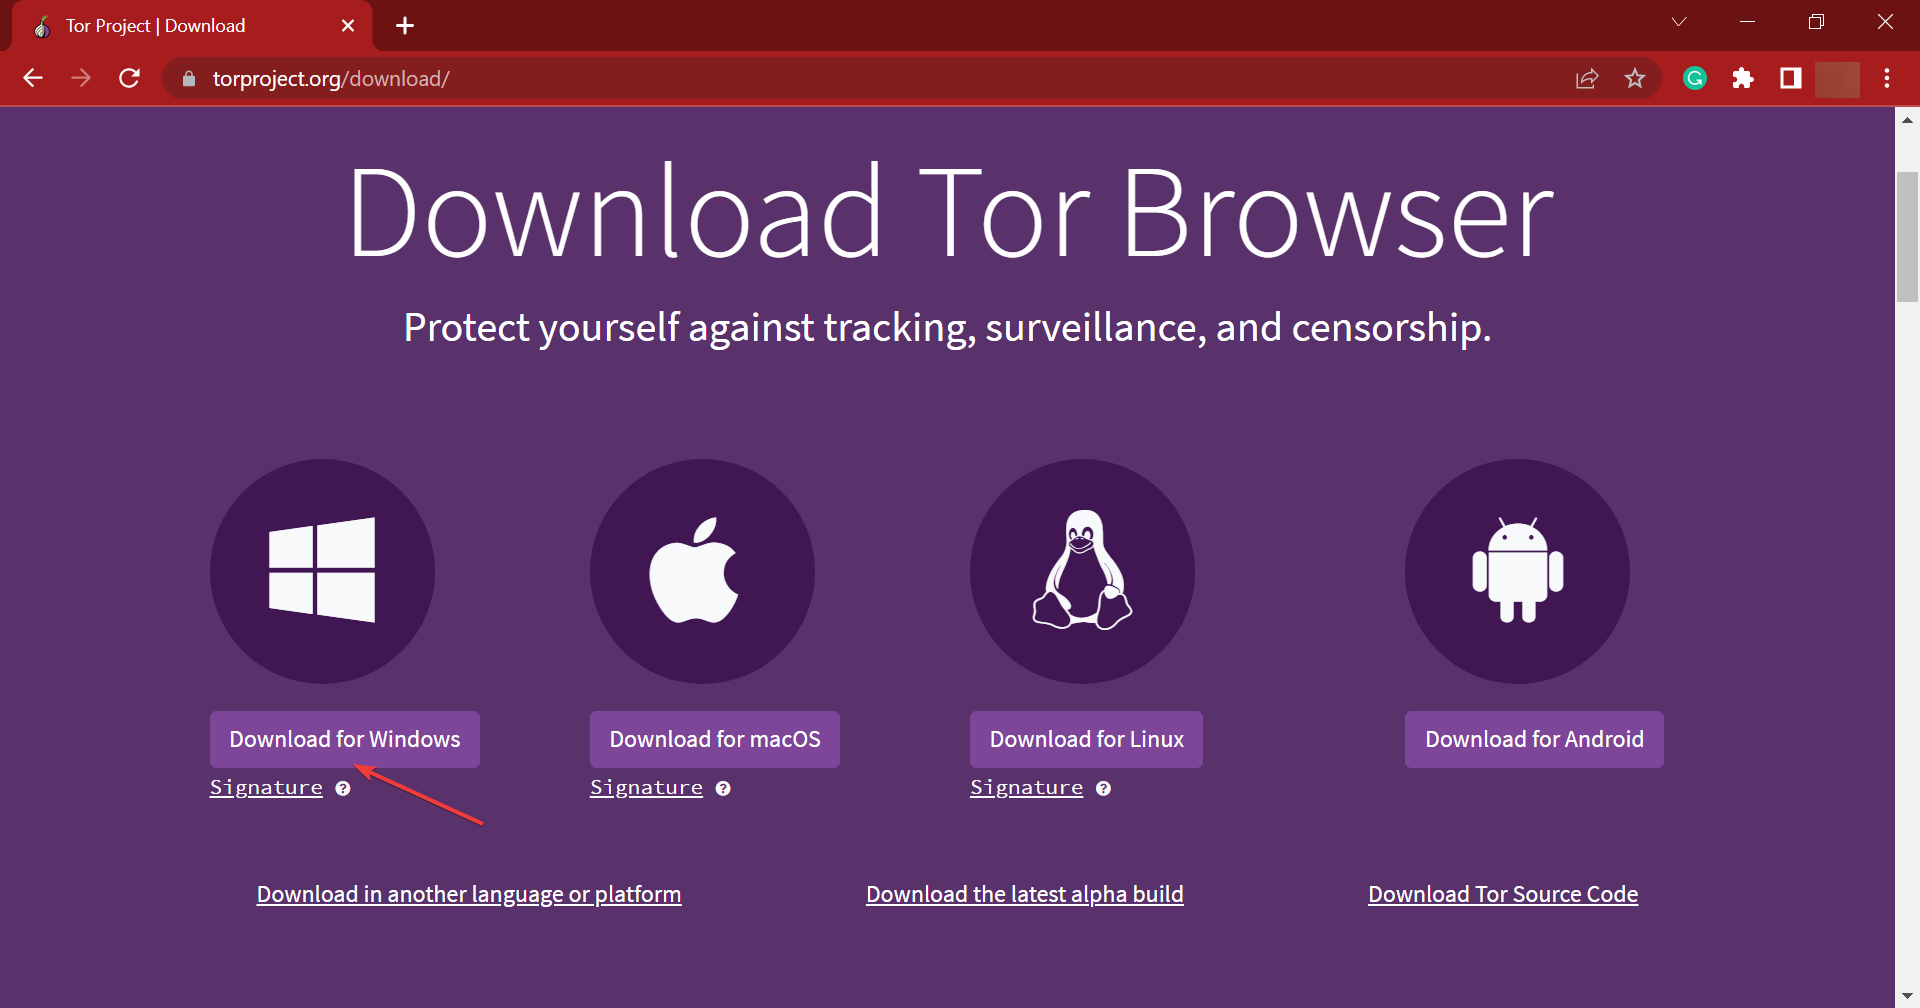 Download tor browser software mega вход скачать тор браузер последнюю версию на русском бесплатно mega